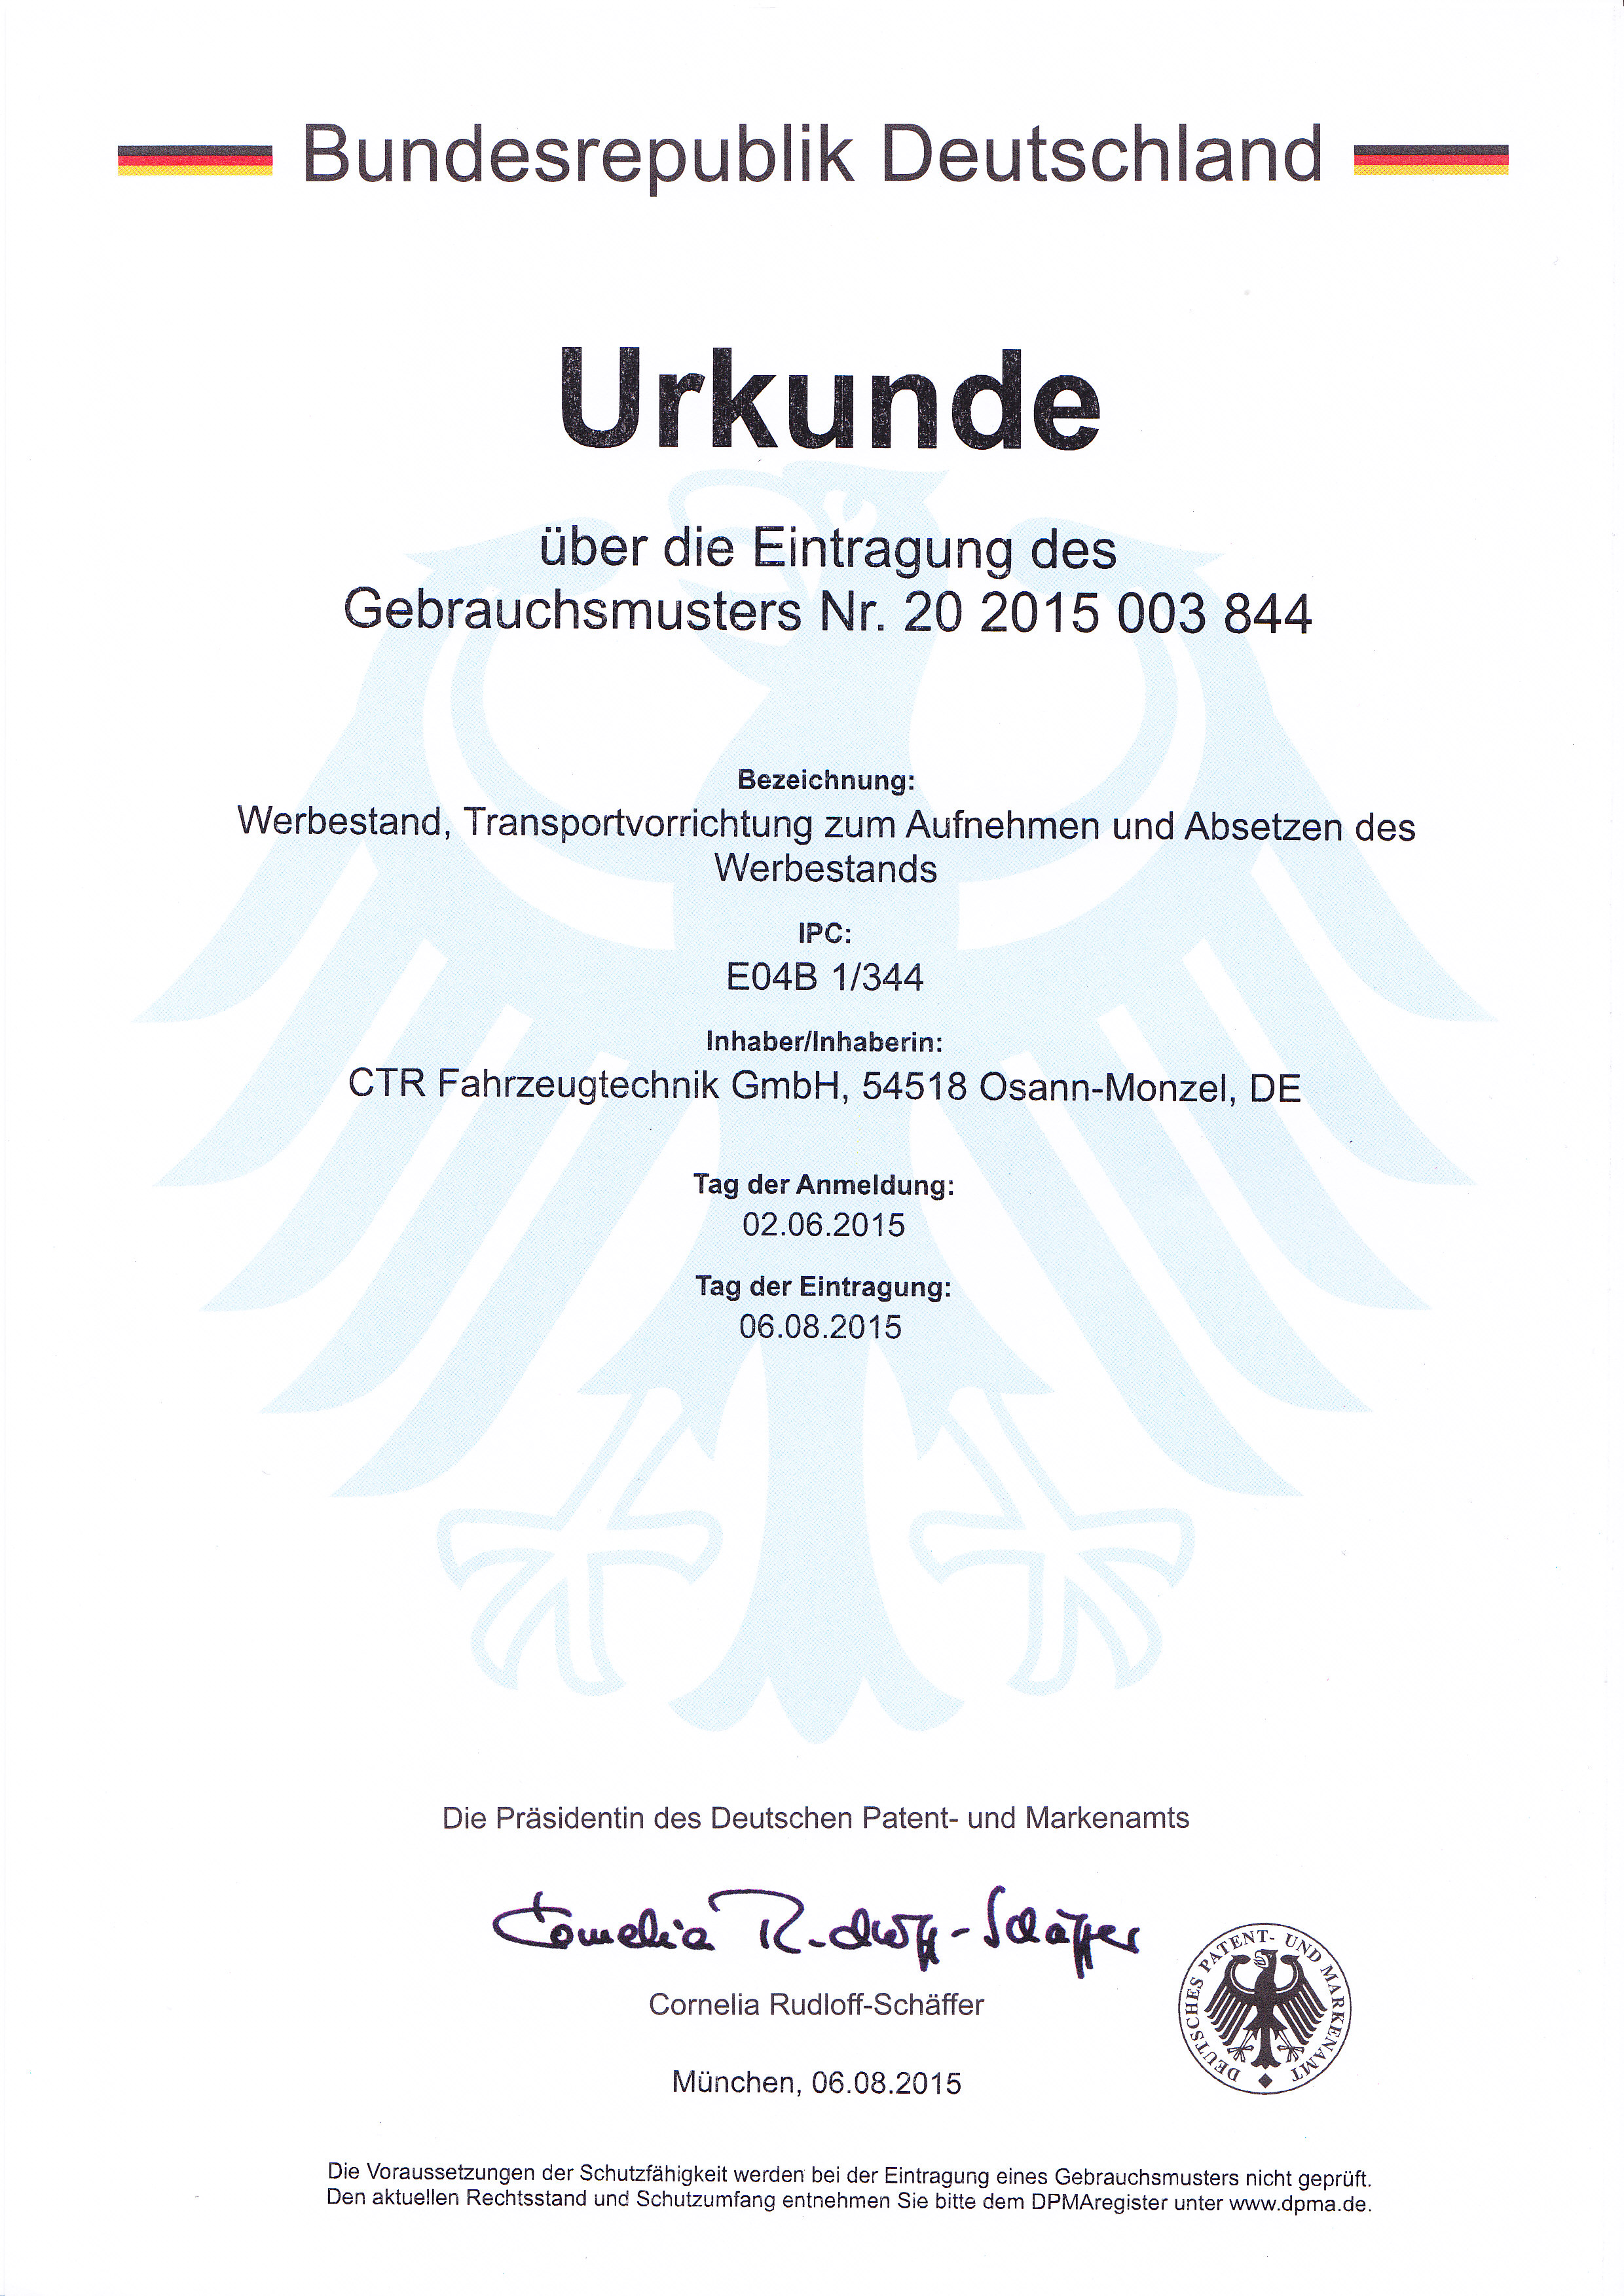 Urkunde-über-das-Gebrauchsmuster-20-2015-003-844